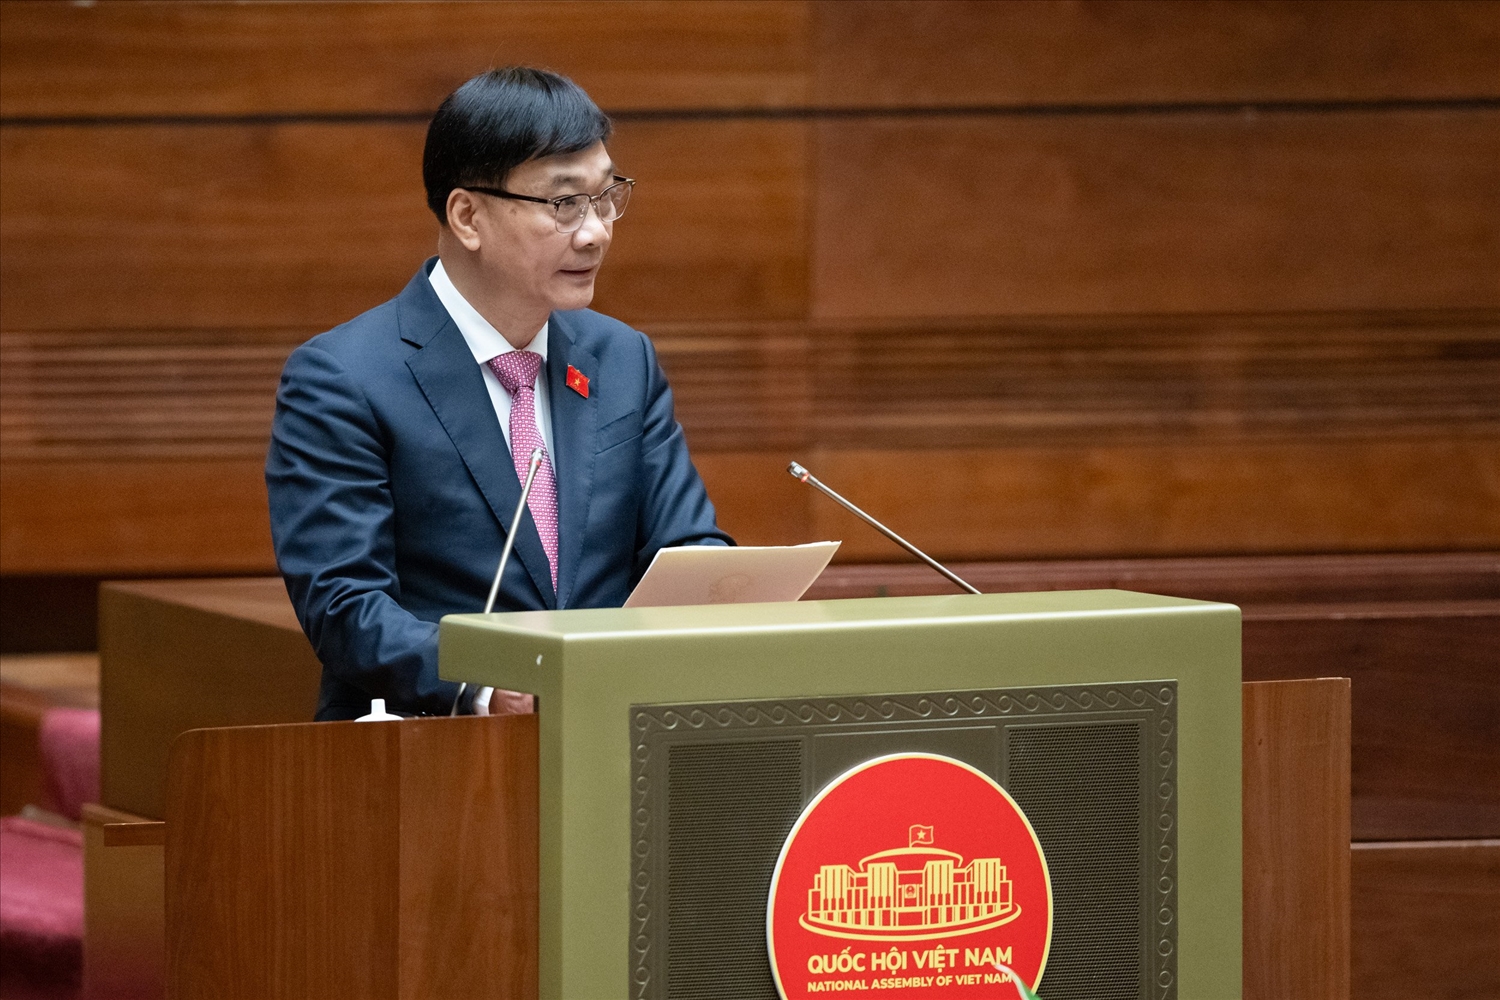 Chủ nhiệm Ủy ban Kinh tế của Quốc hội Vũ Hồng Thanh trình bày báo cáo thẩm tra